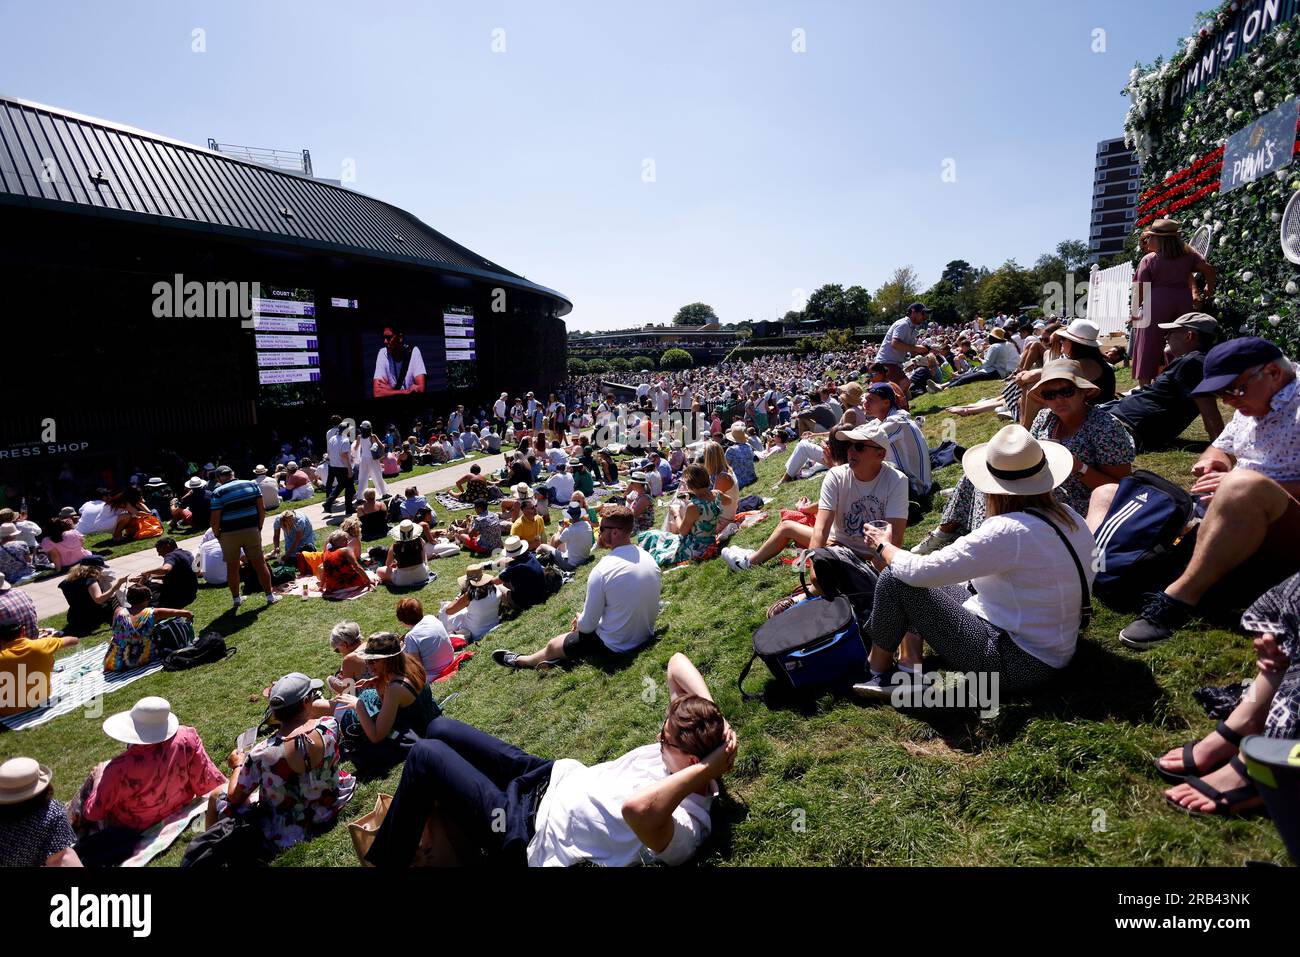 Spettatori sulla collina il quinto giorno dei campionati di Wimbledon 2023 presso l'All England Lawn Tennis and Croquet Club di Wimbledon. Data immagine: Venerdì 7 luglio 2023. Foto Stock